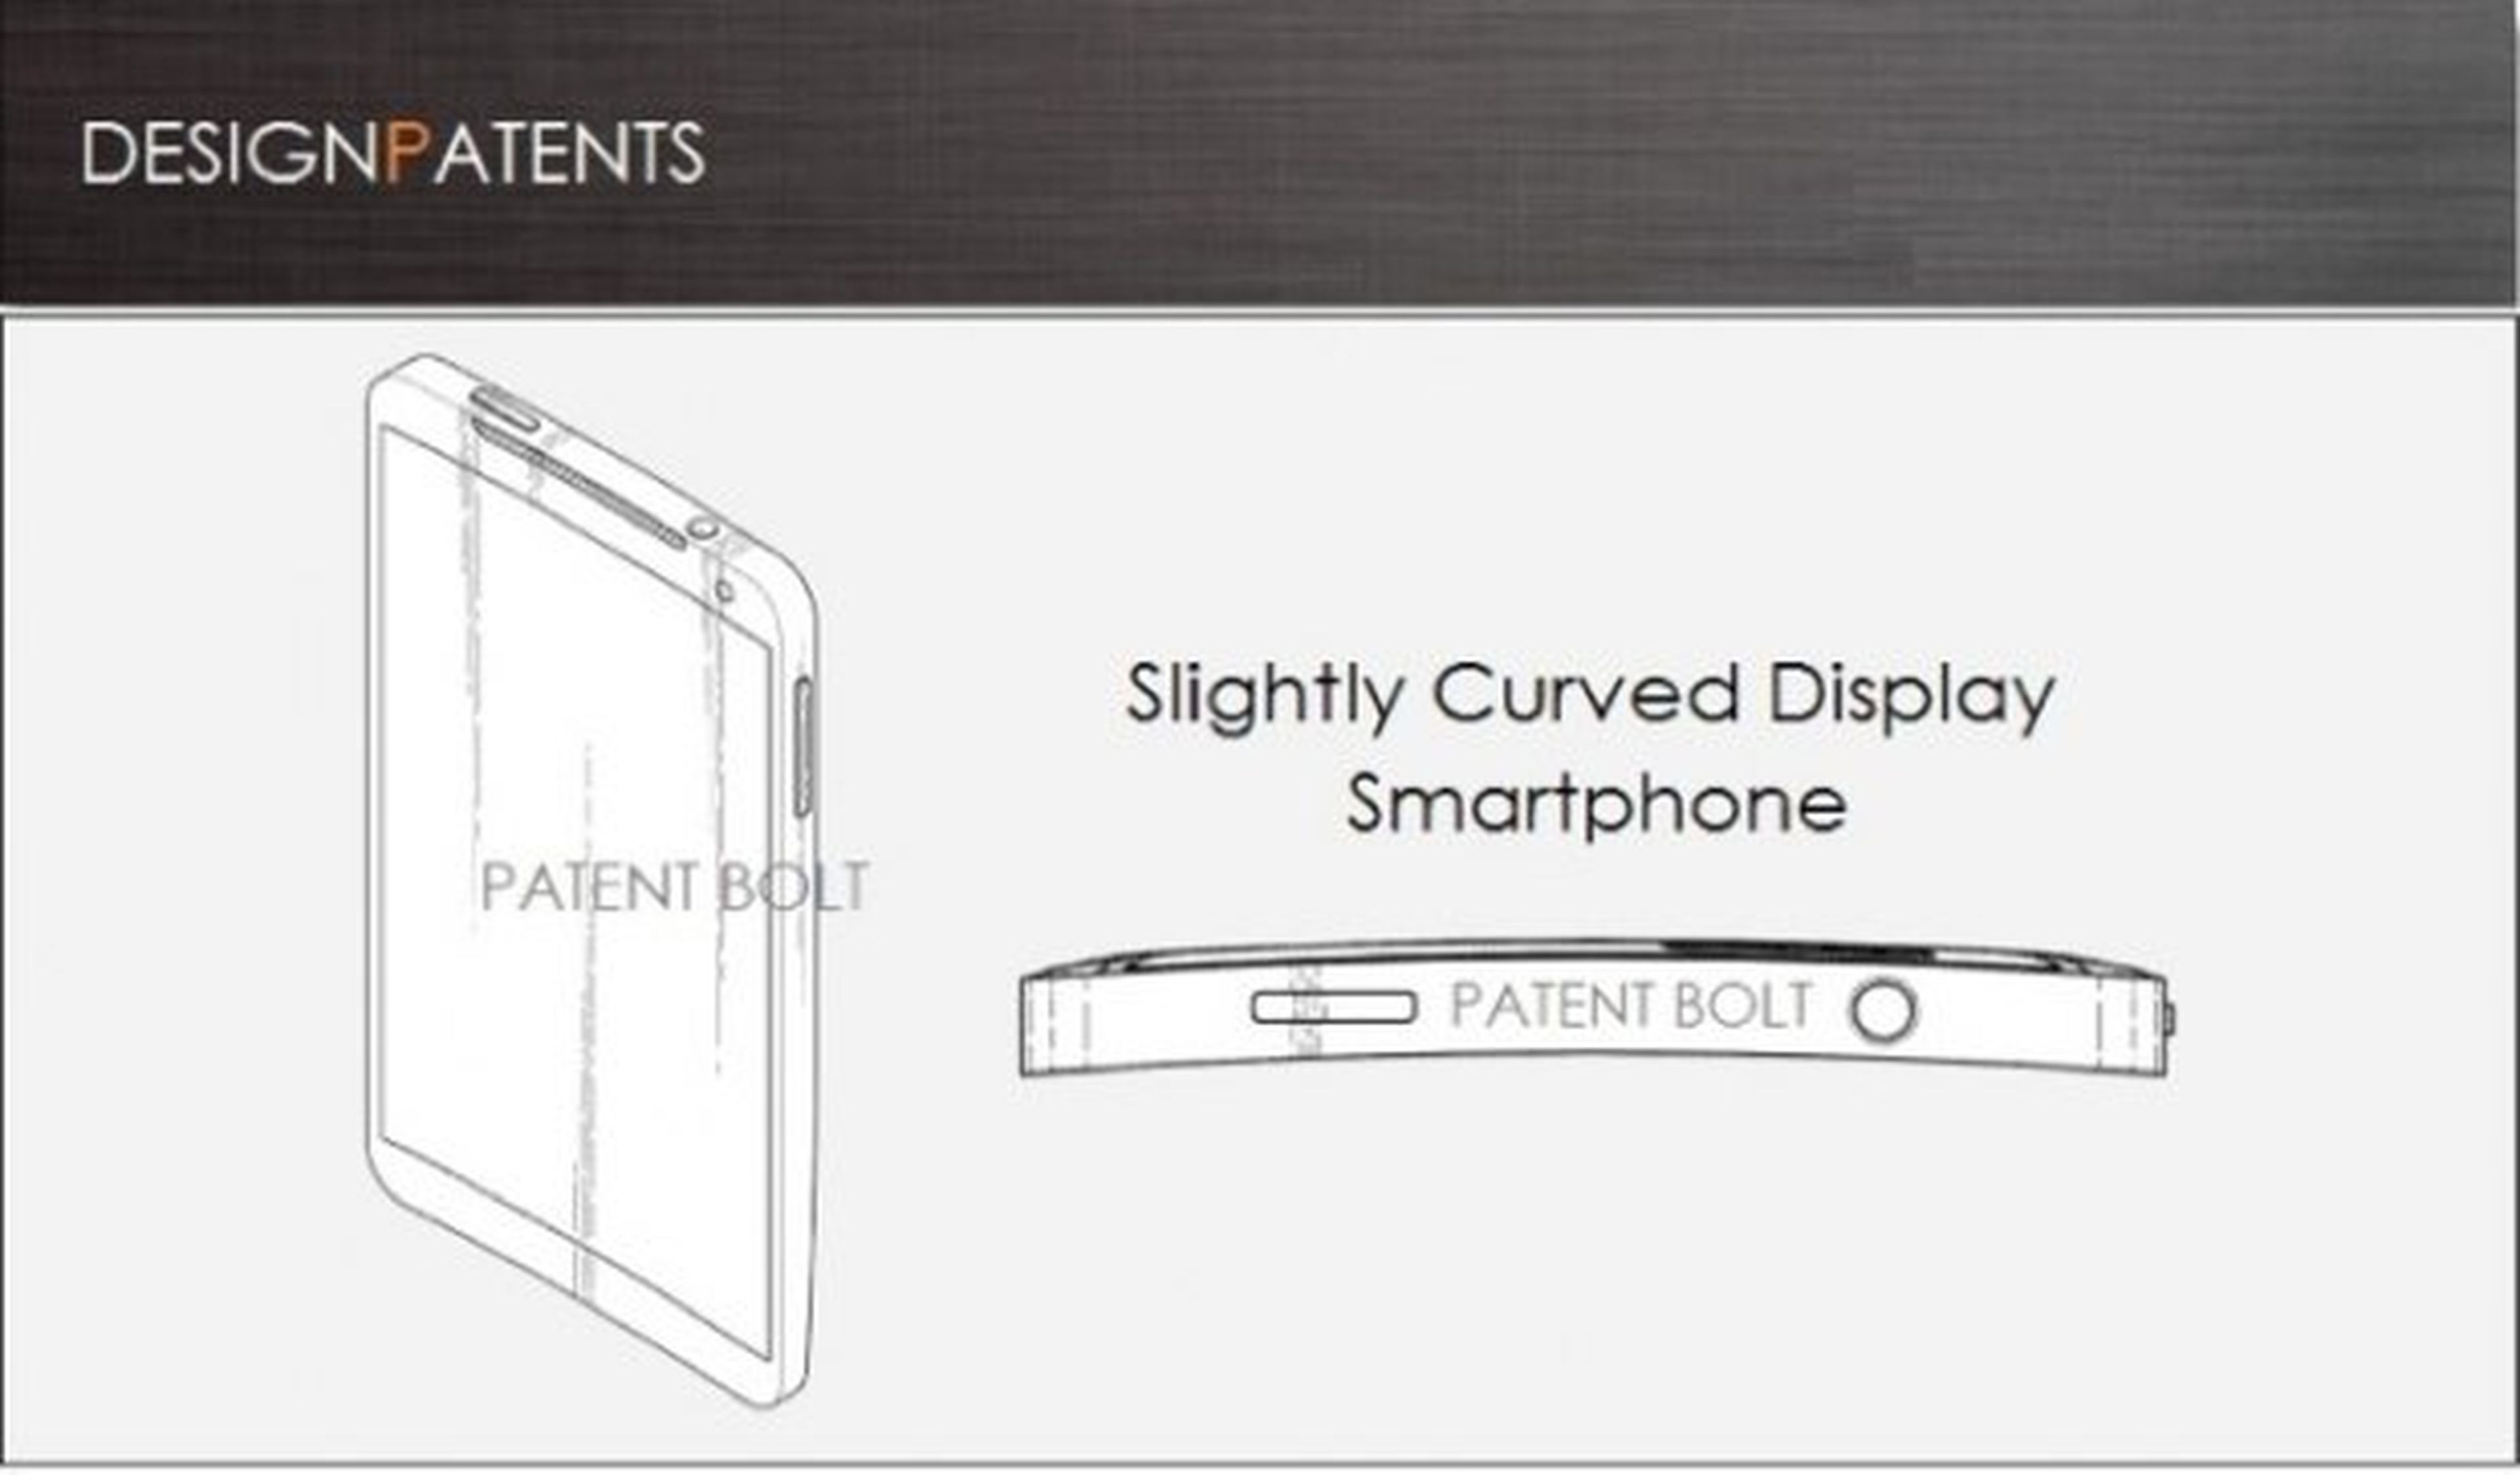 Samsung patentiza diseño de smartphone curvado (imagen por Patent Bolt)